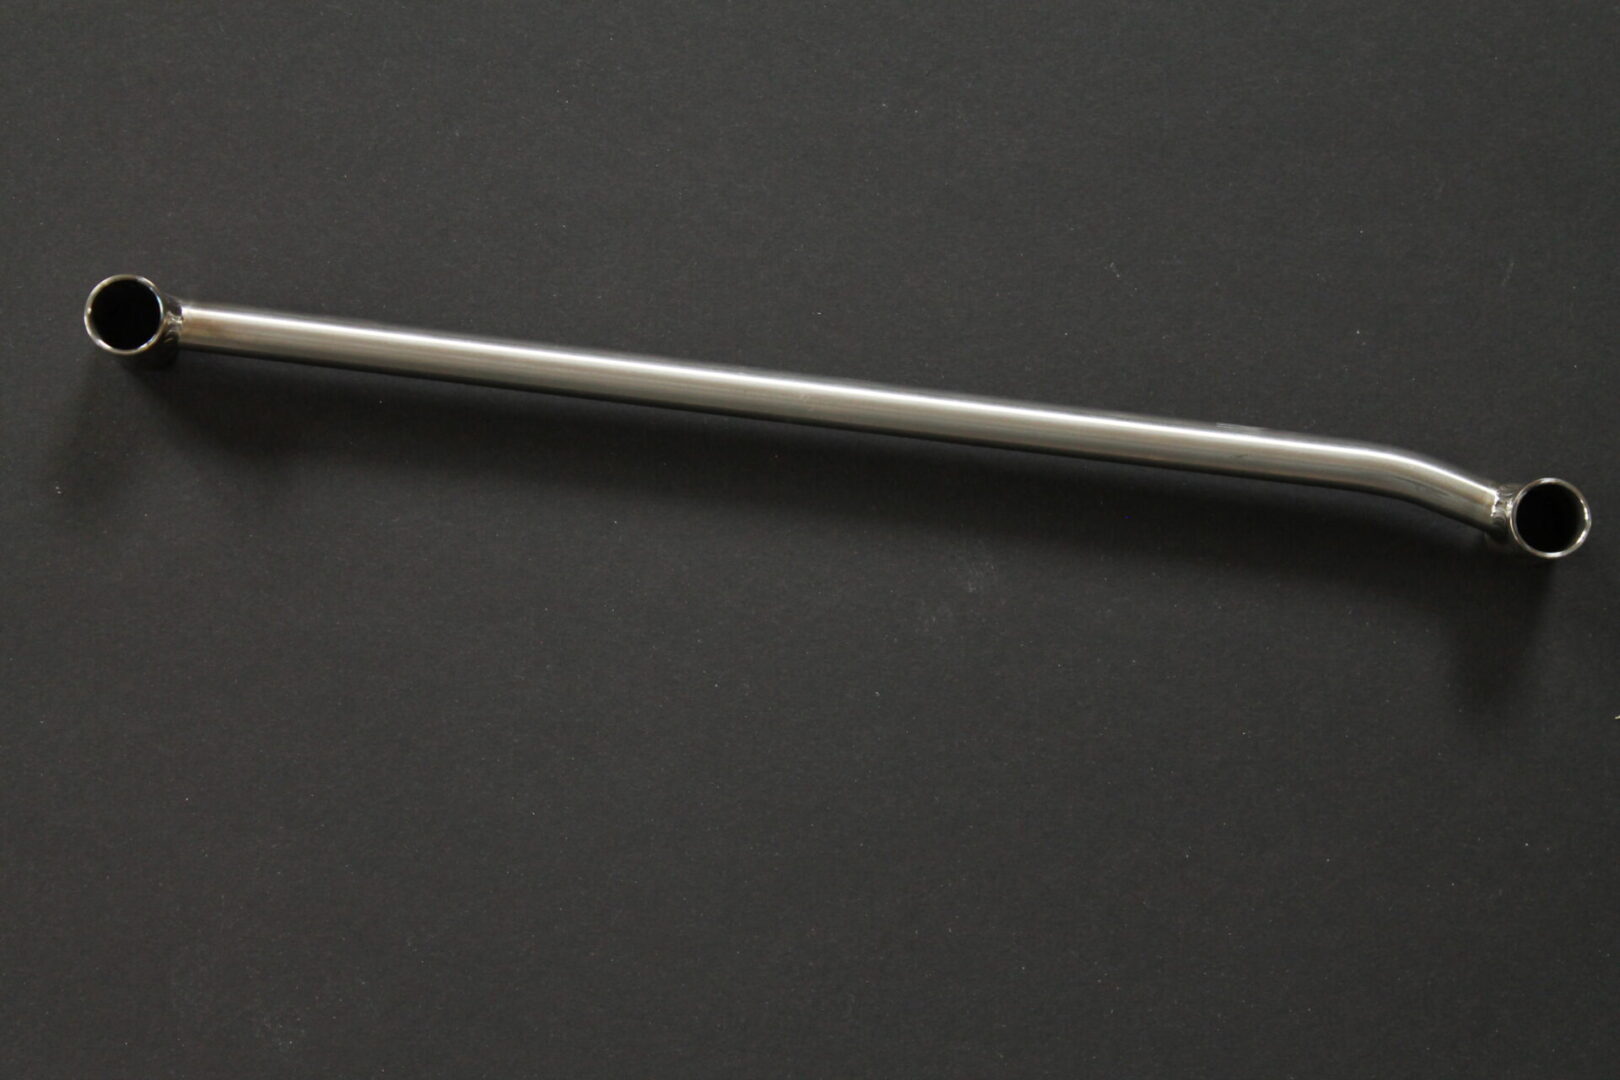 A 16-23 Pro Titanium Shock Rod w/ HCT Coated Alum. Bushings on a black surface.